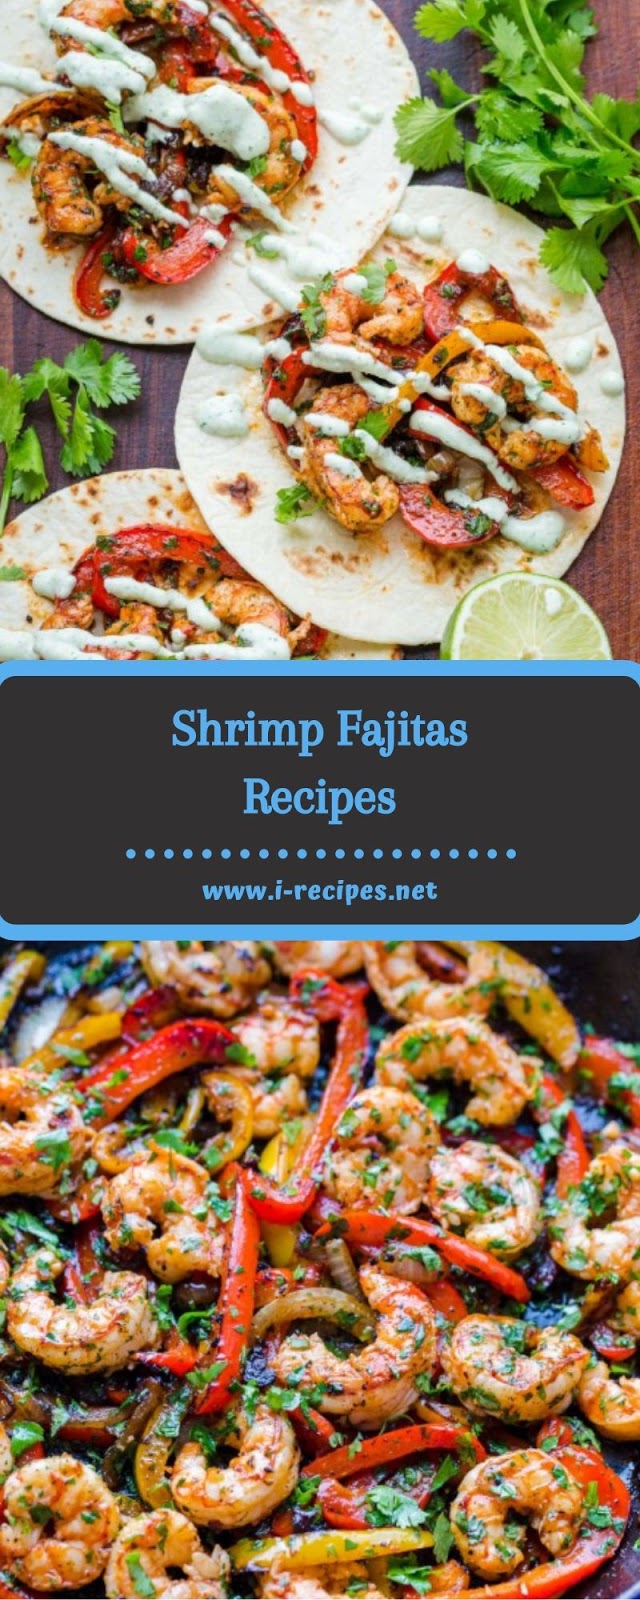 Shrimp Fajitas Recipes